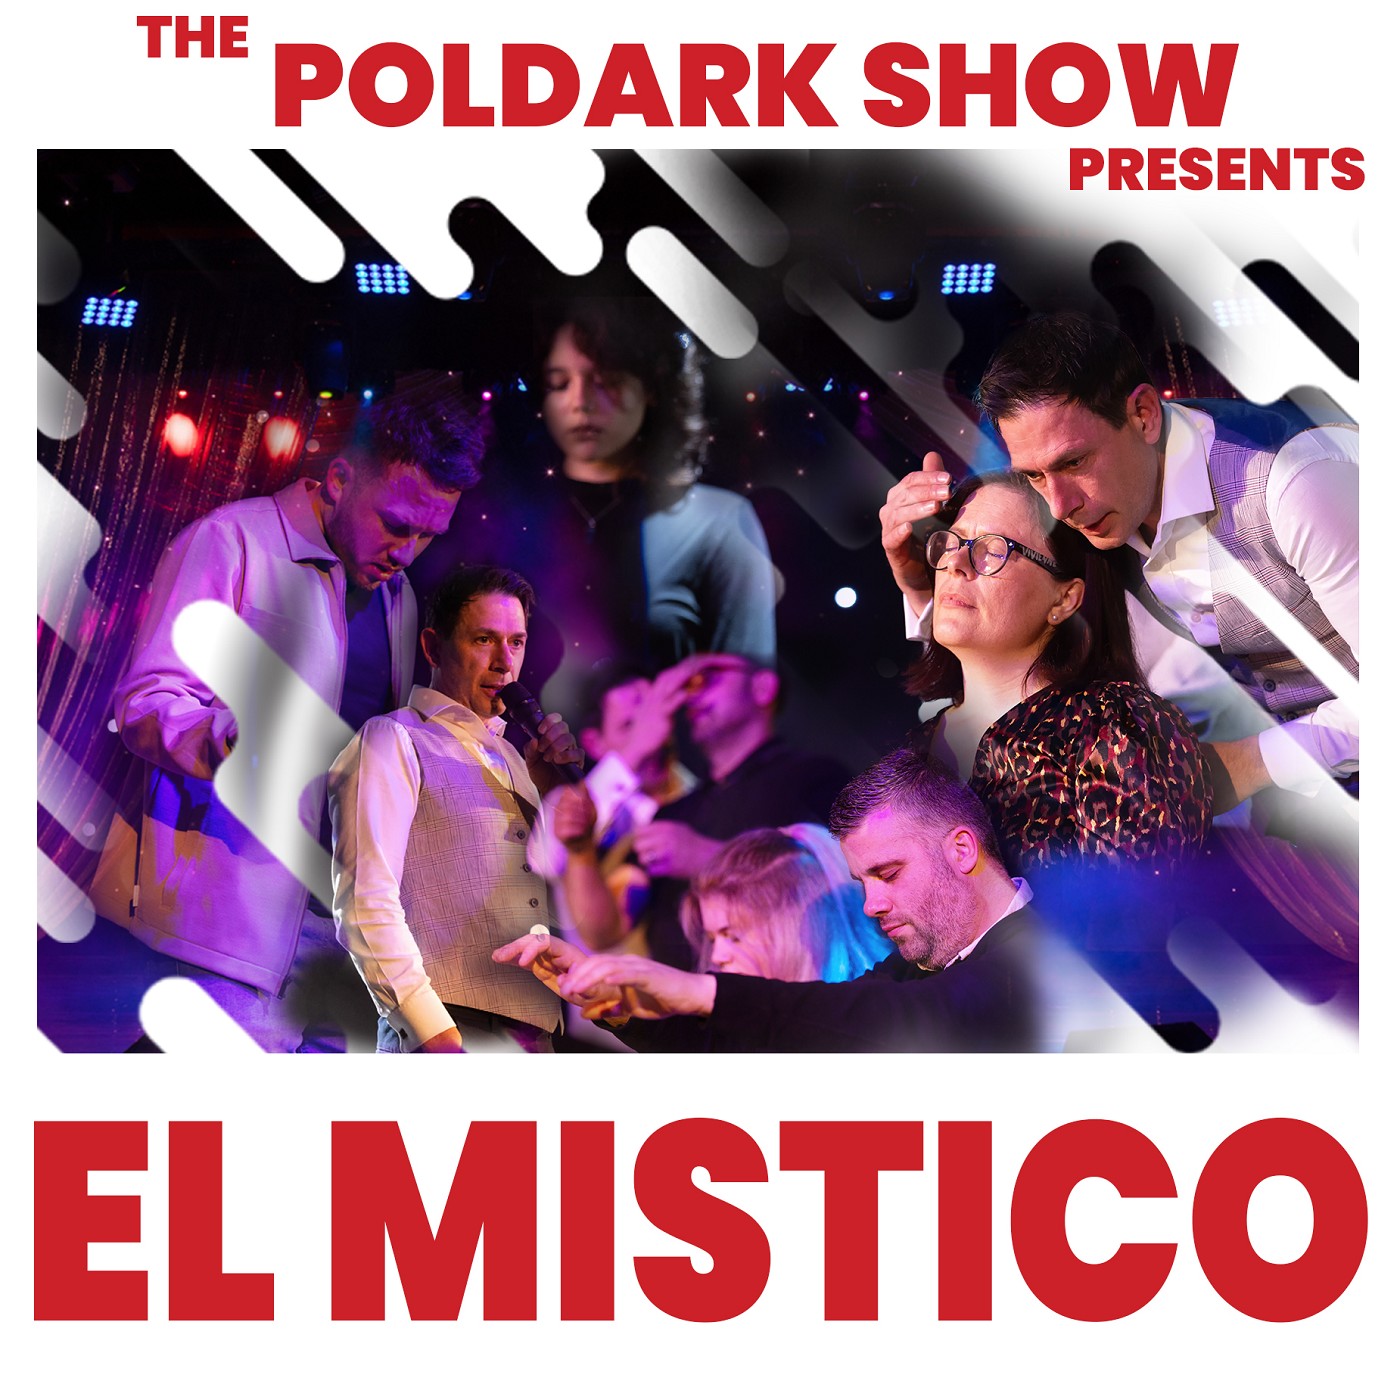 The Poldark Show - El Mistico